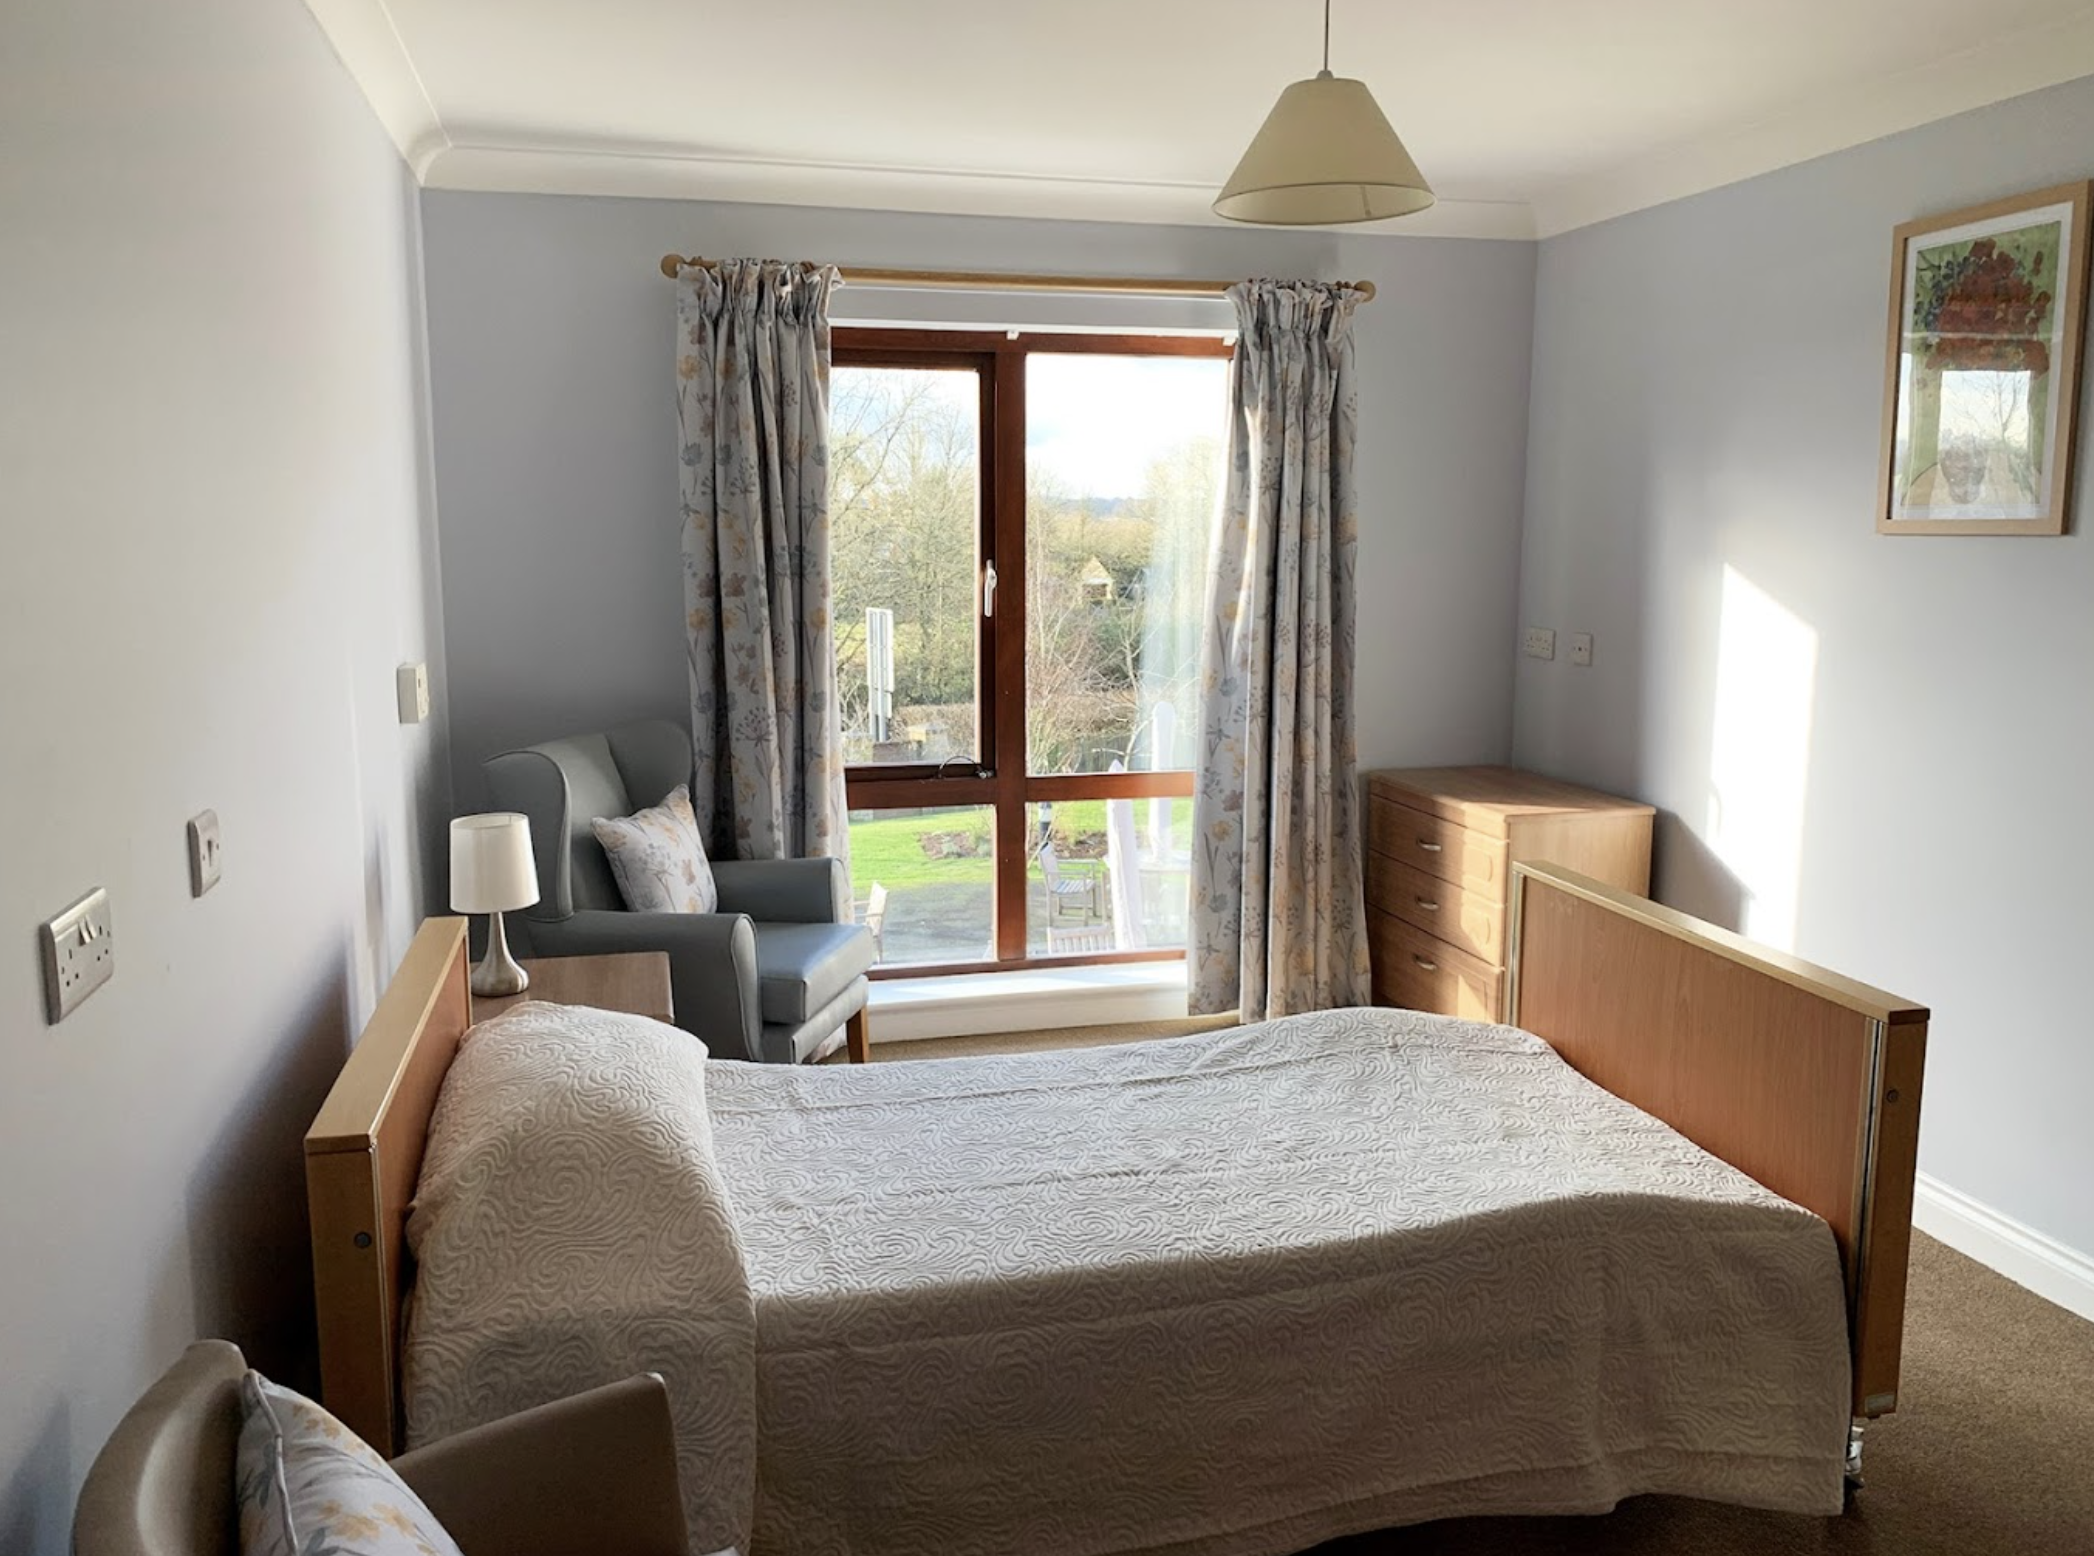 Bedroom of Fern Brook Lodge care home in Gillingham, Dorset